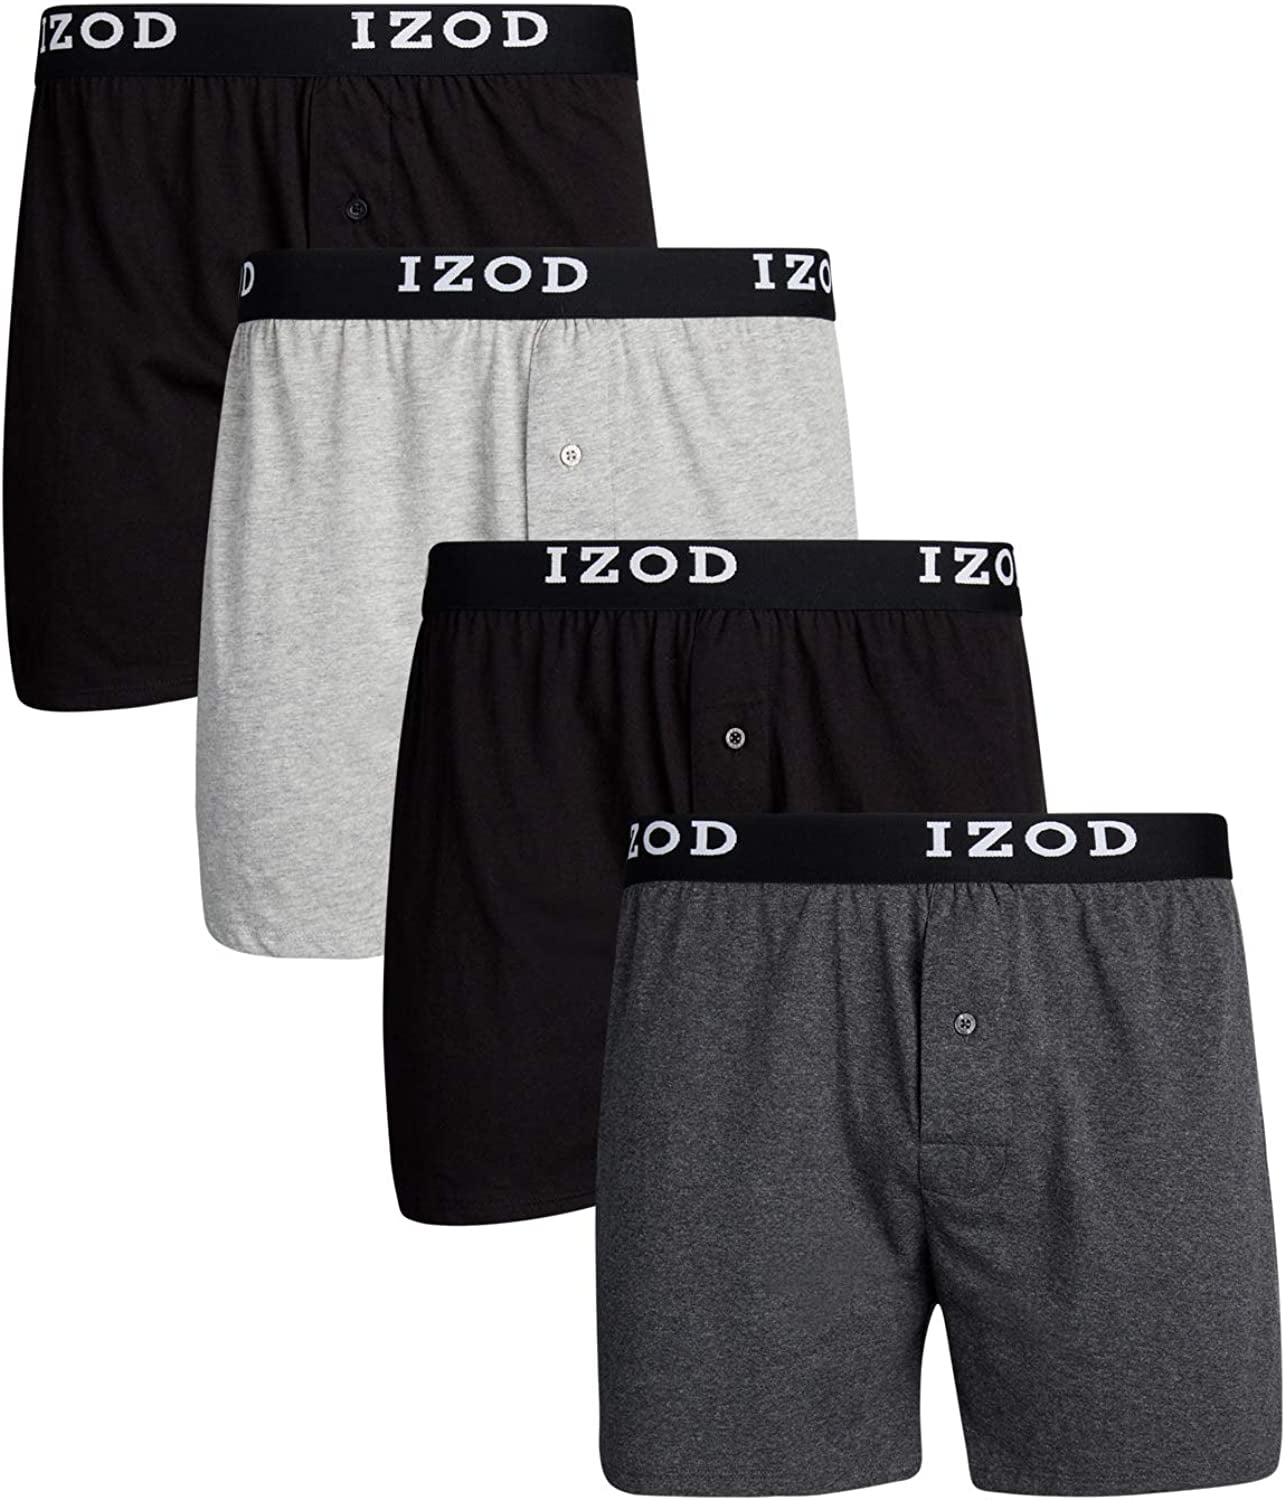 IZOD Mens Cotton Knit Boxers 4-Pack - Walmart.com